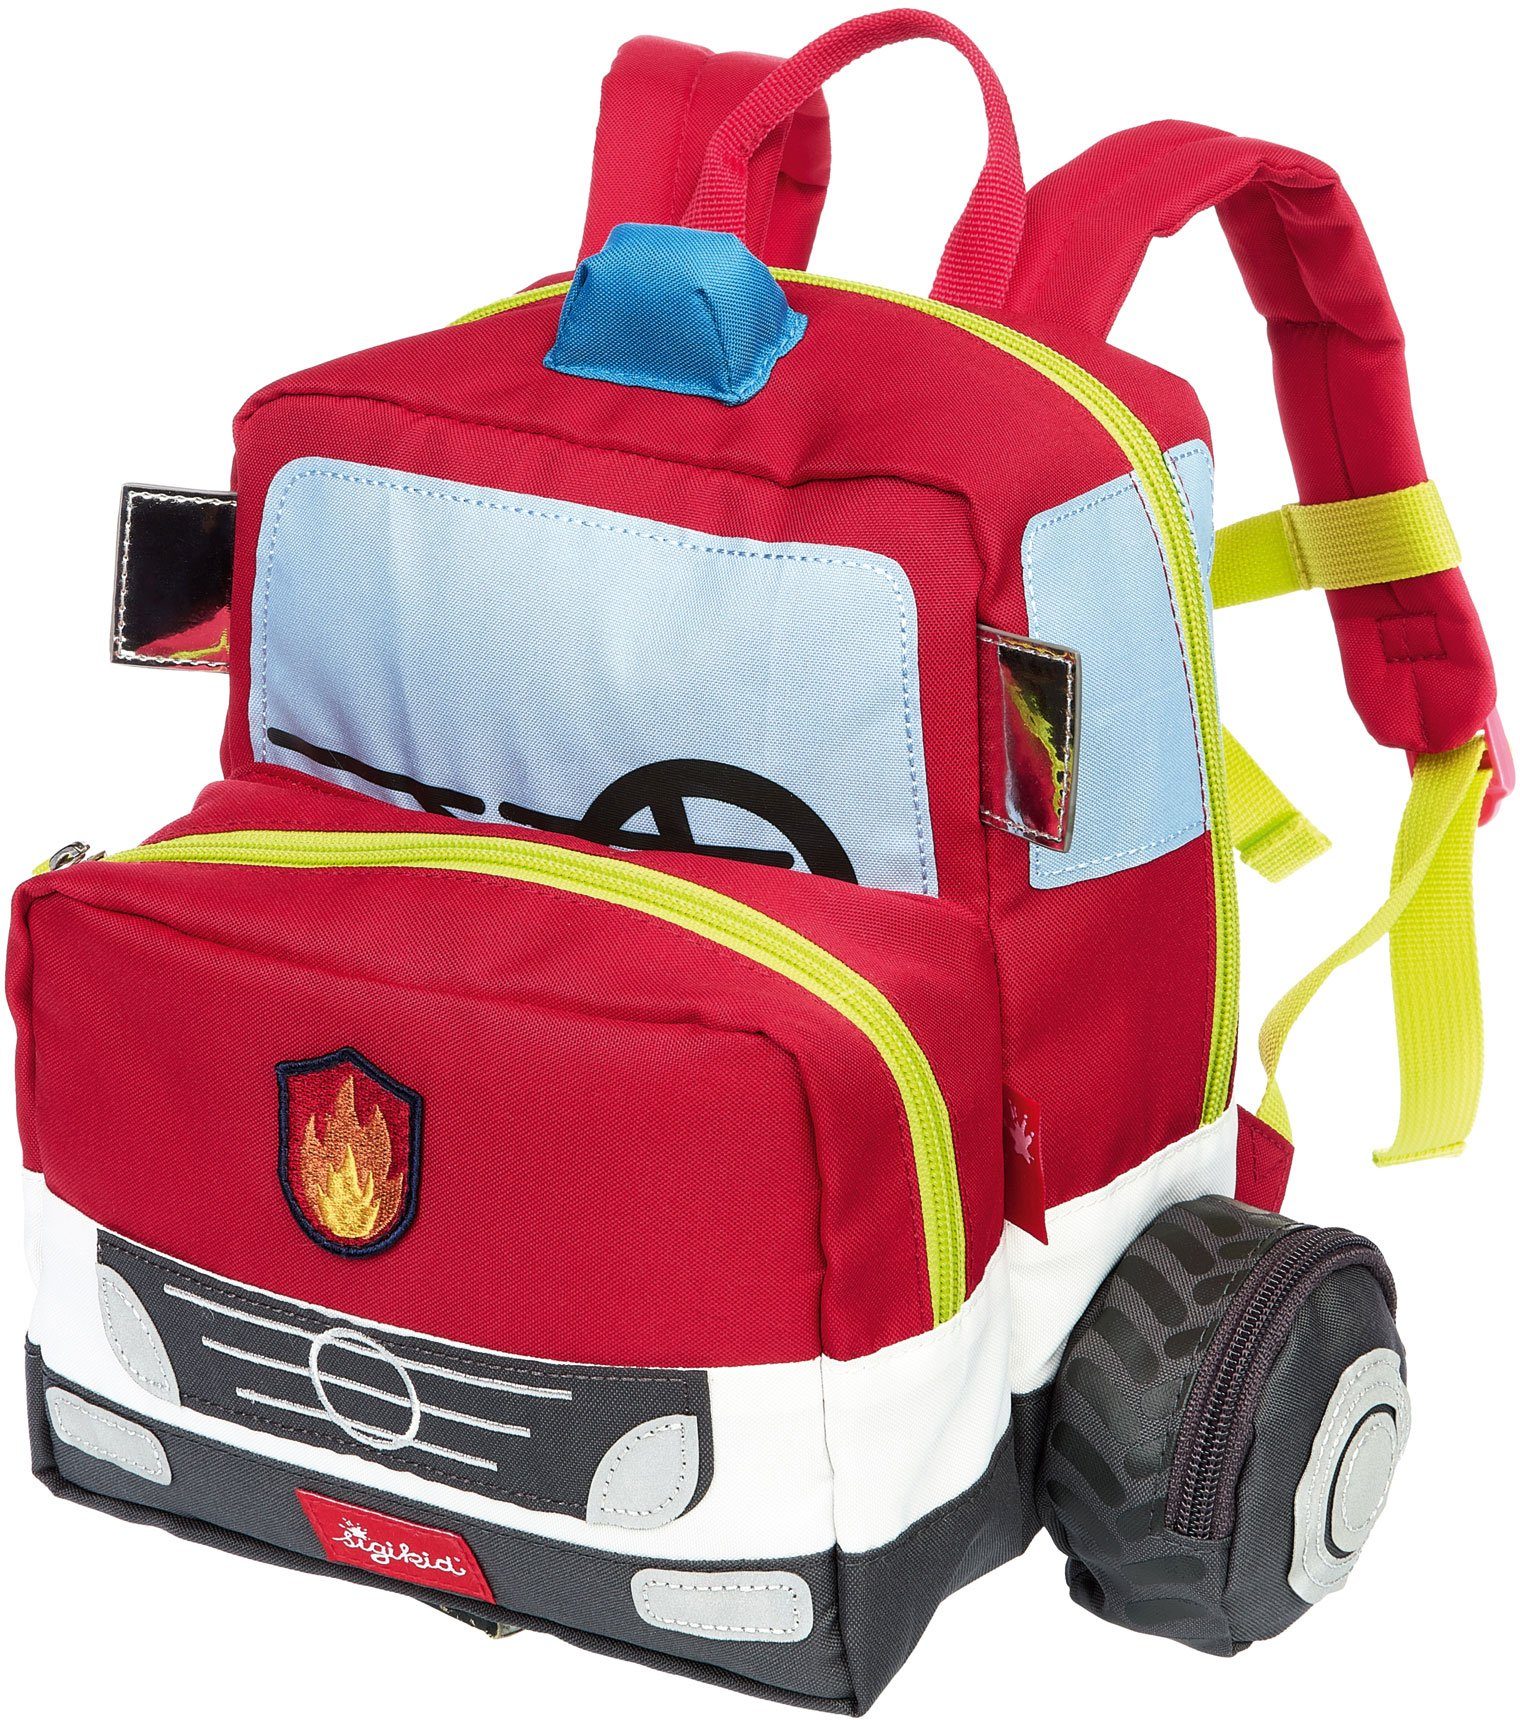 Sigikid Kinderrucksack Feuerwehr, 28 cm, Mit gepolsterten Schultergurten  und einstellbarem Brustgurt